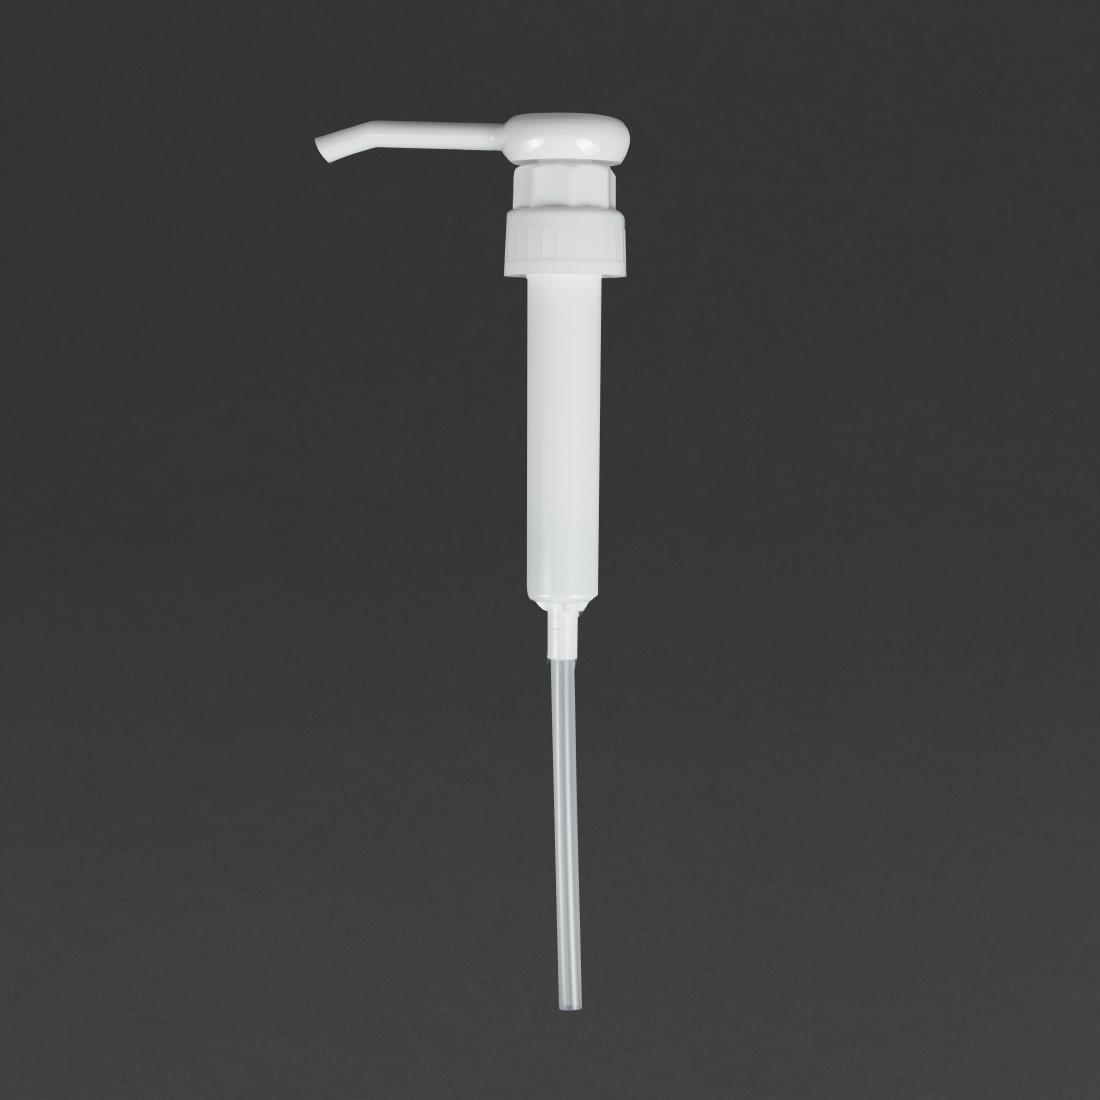 Jantex Pelican Pump Dispenser - GF368  - 1